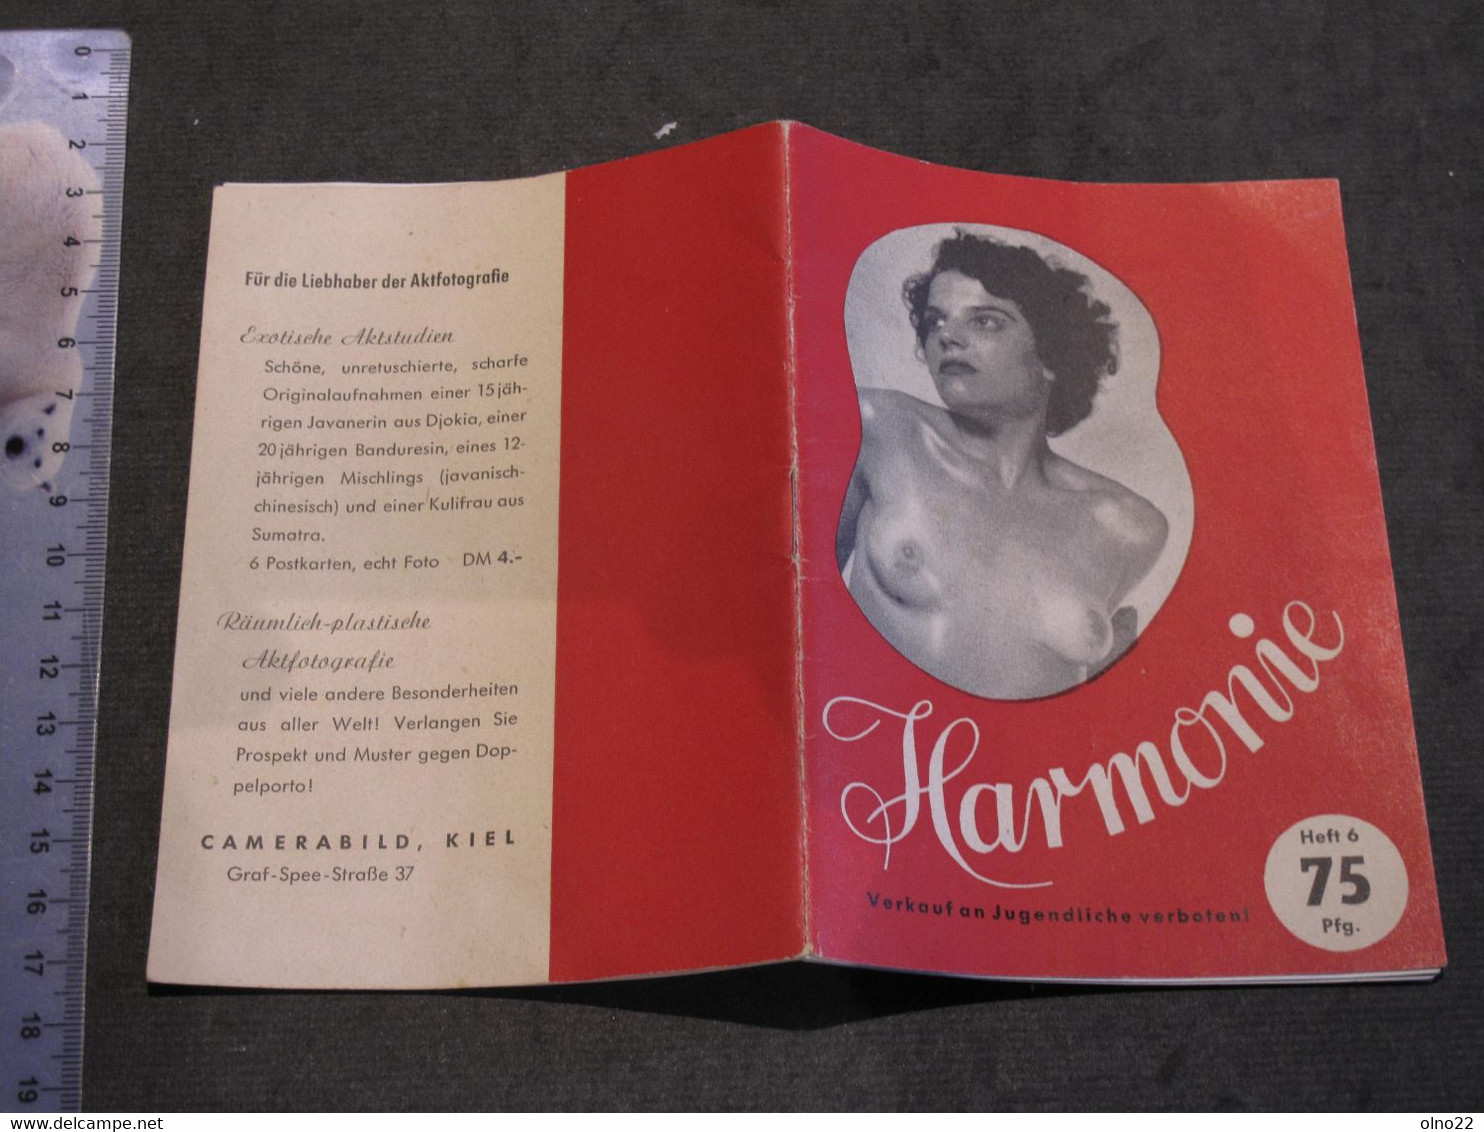 HARMONIE - CAMERA BIELD KIEL - PETIT RECUEIL DE 15 PHOTOS N/B DE NUS FEMININS EDITION ALLEMANDE - CIRCA ANNEES 50 - Fotografía